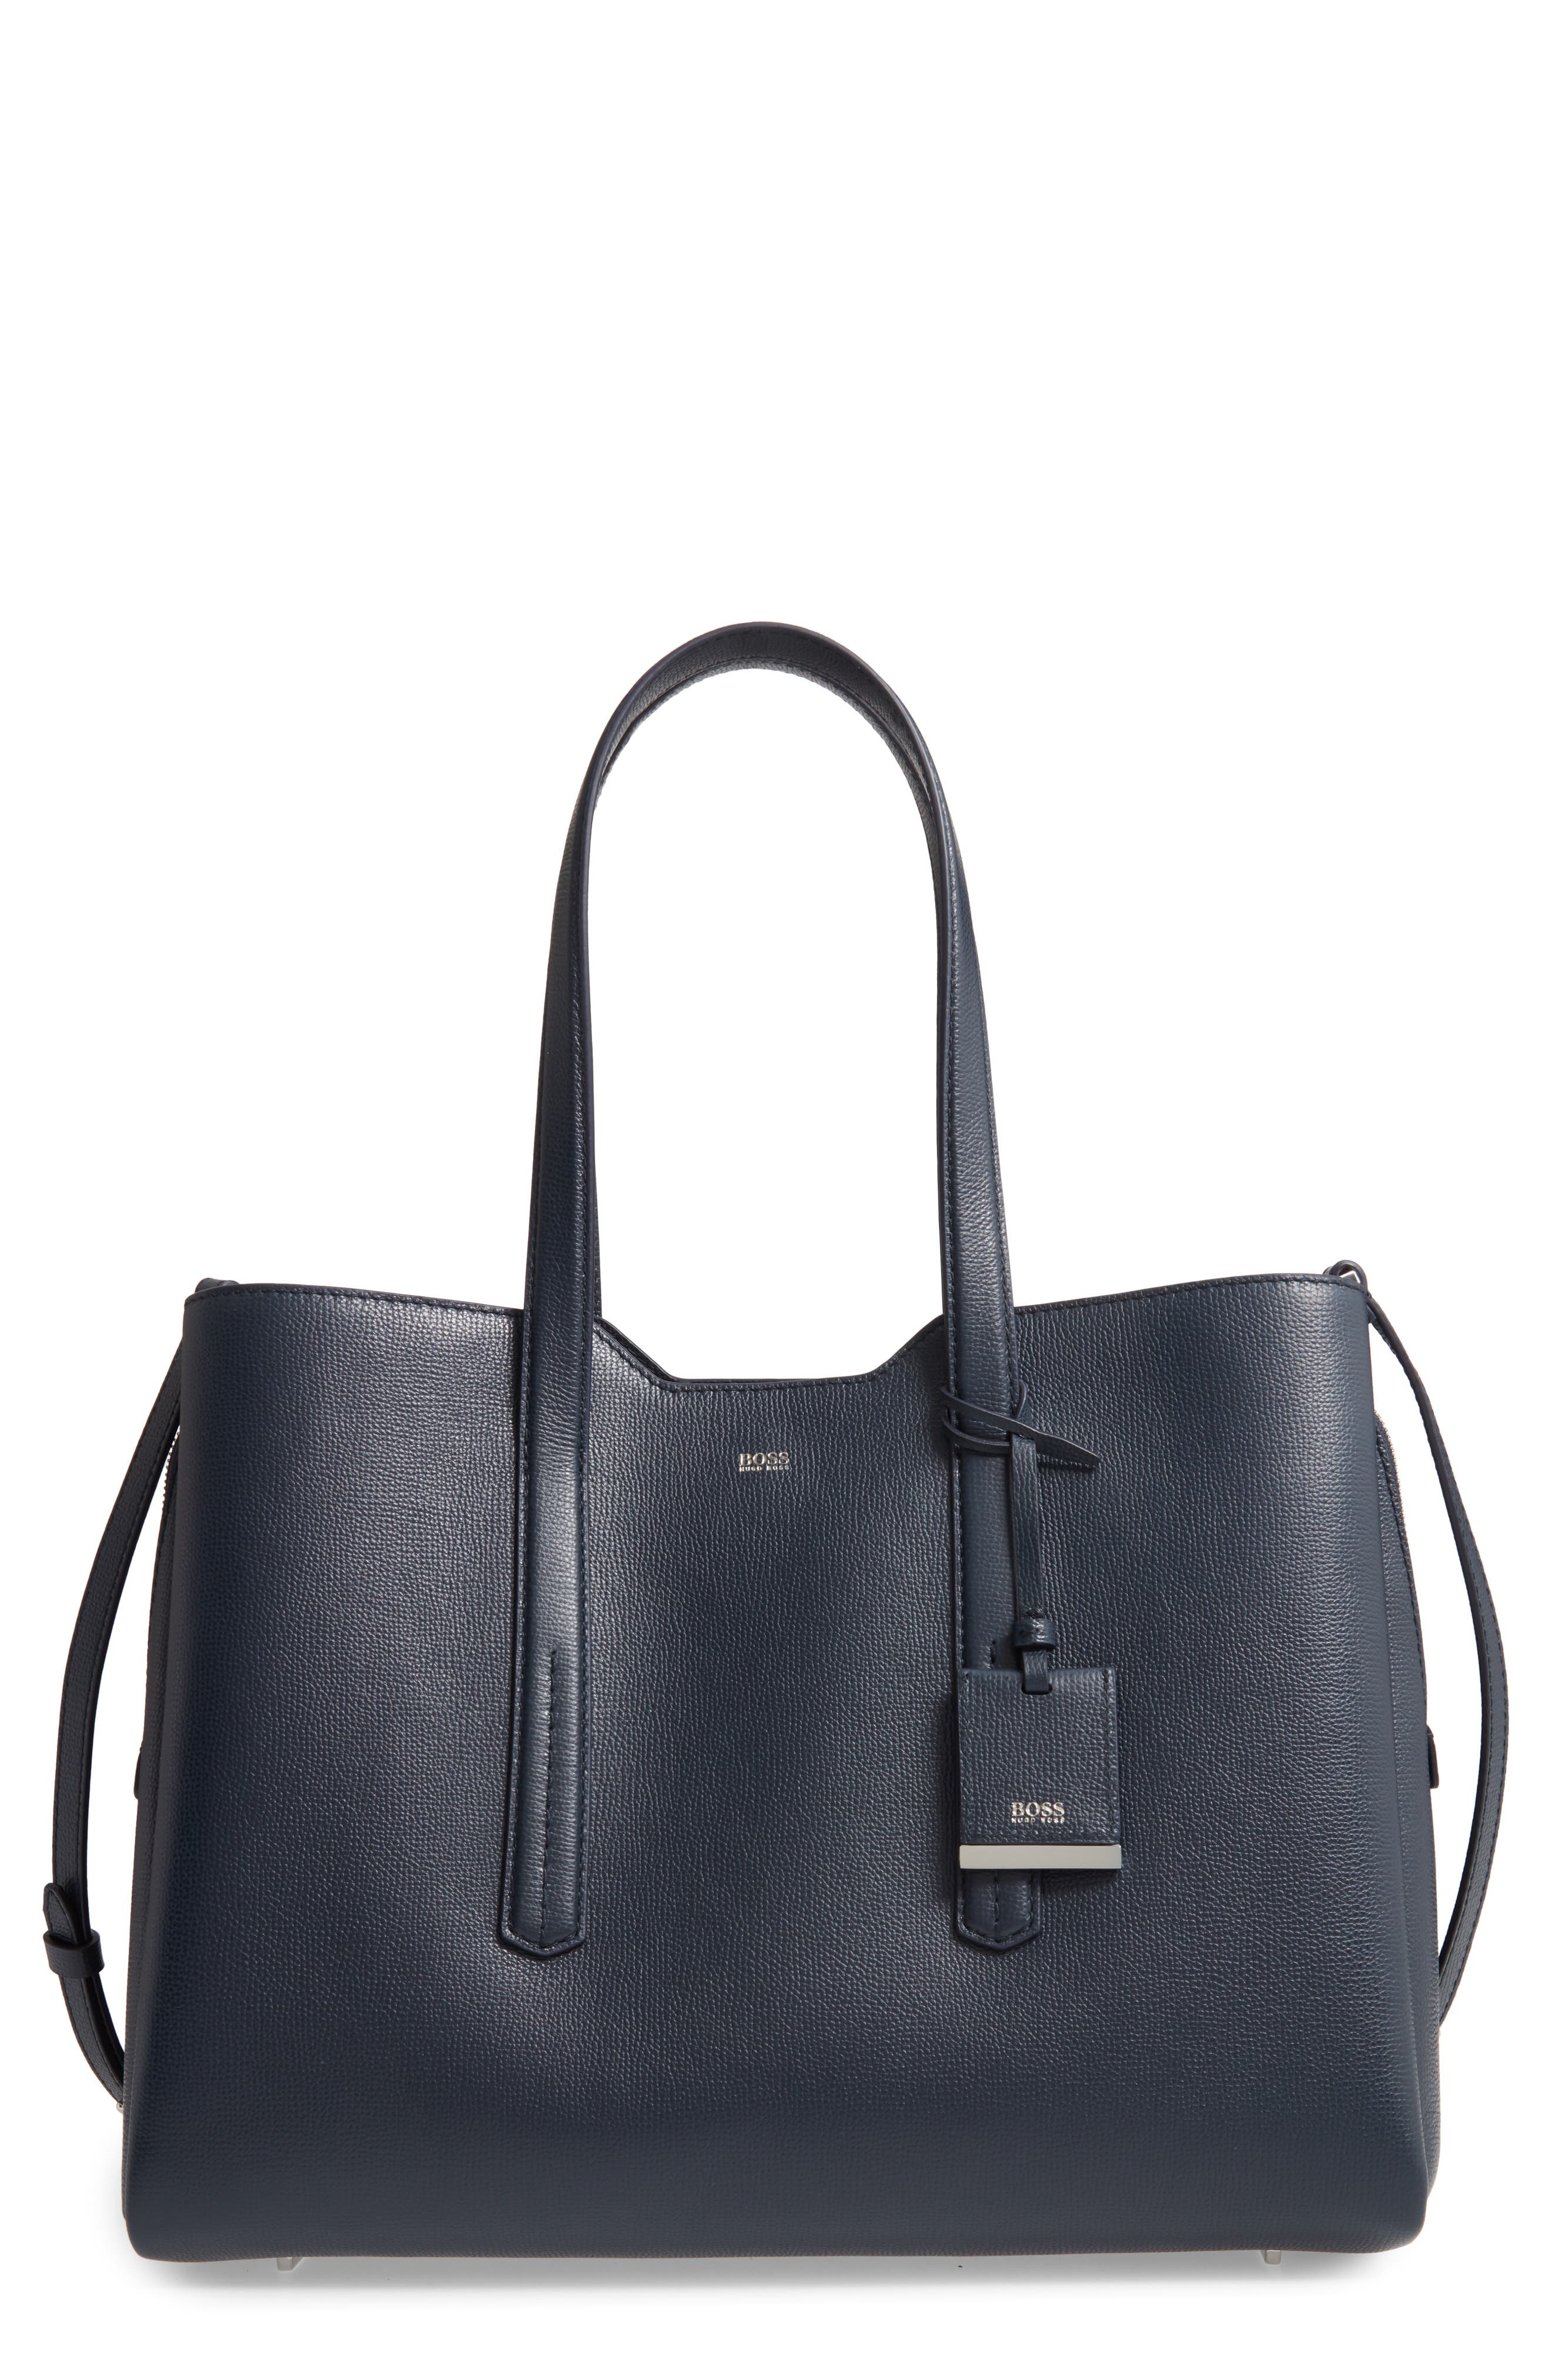 BOSS Handbags, Purses \u0026 Wallets | Nordstrom